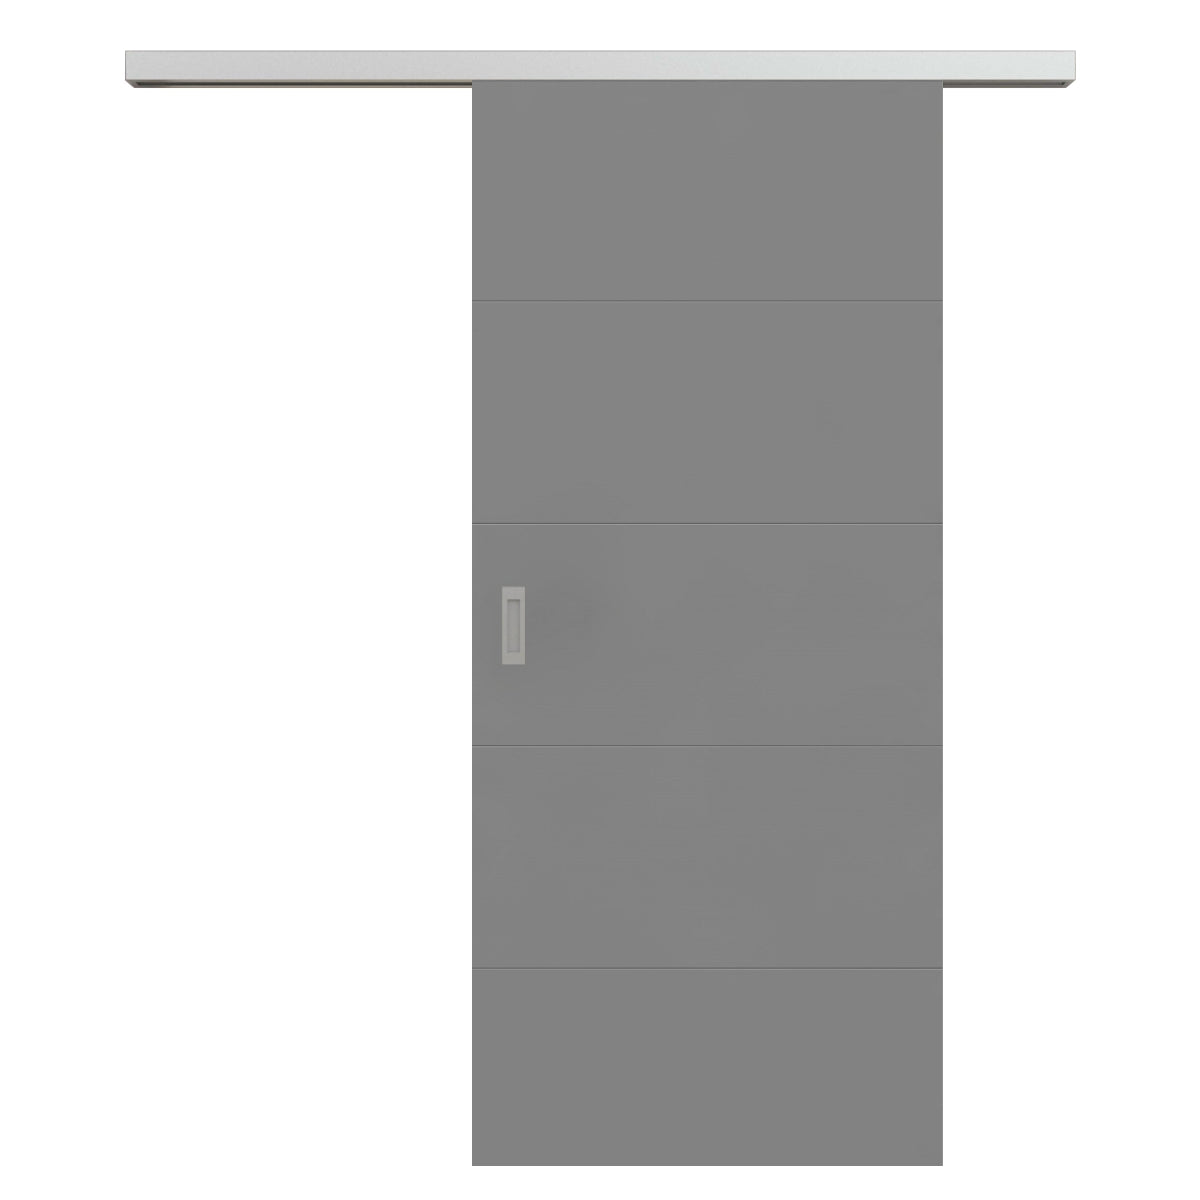 Schiebetür für Set mit Edelstahllaufkasten grau 4 Rillen quer - Modell Designtür Q47